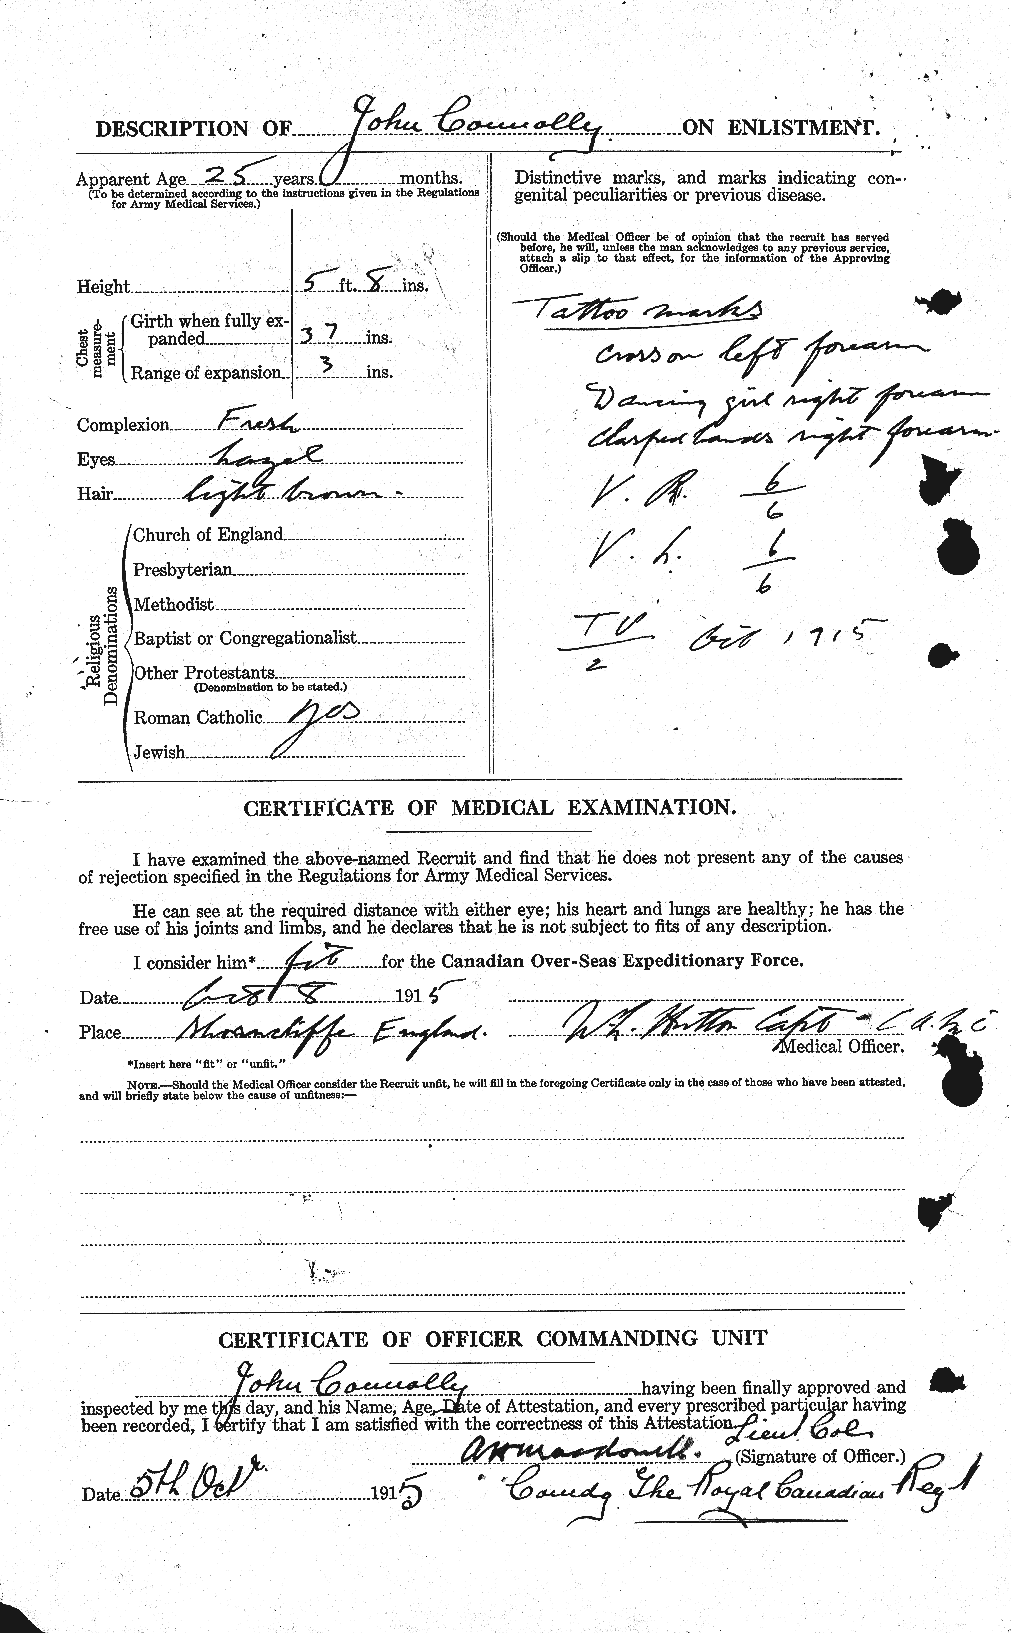 Dossiers du Personnel de la Première Guerre mondiale - CEC 069395b